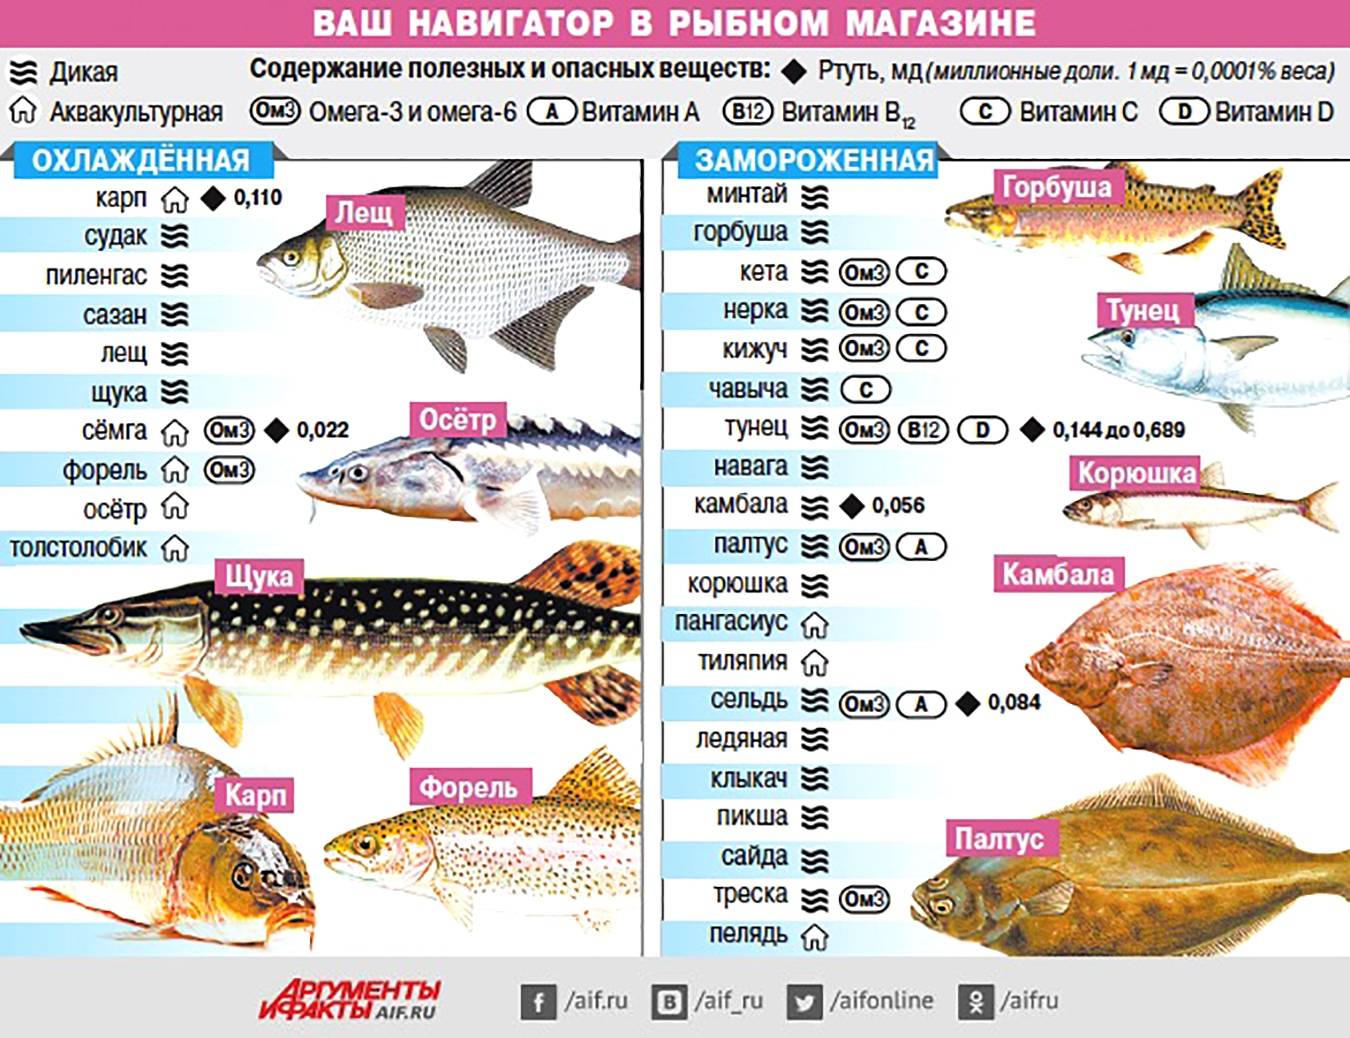 Рыбы сравнение таблица. Самые популярные сорта рыбы. Самые полезные сорта рыбы. Содержание витаминов в рыбе. Таблица полезной рыбы.